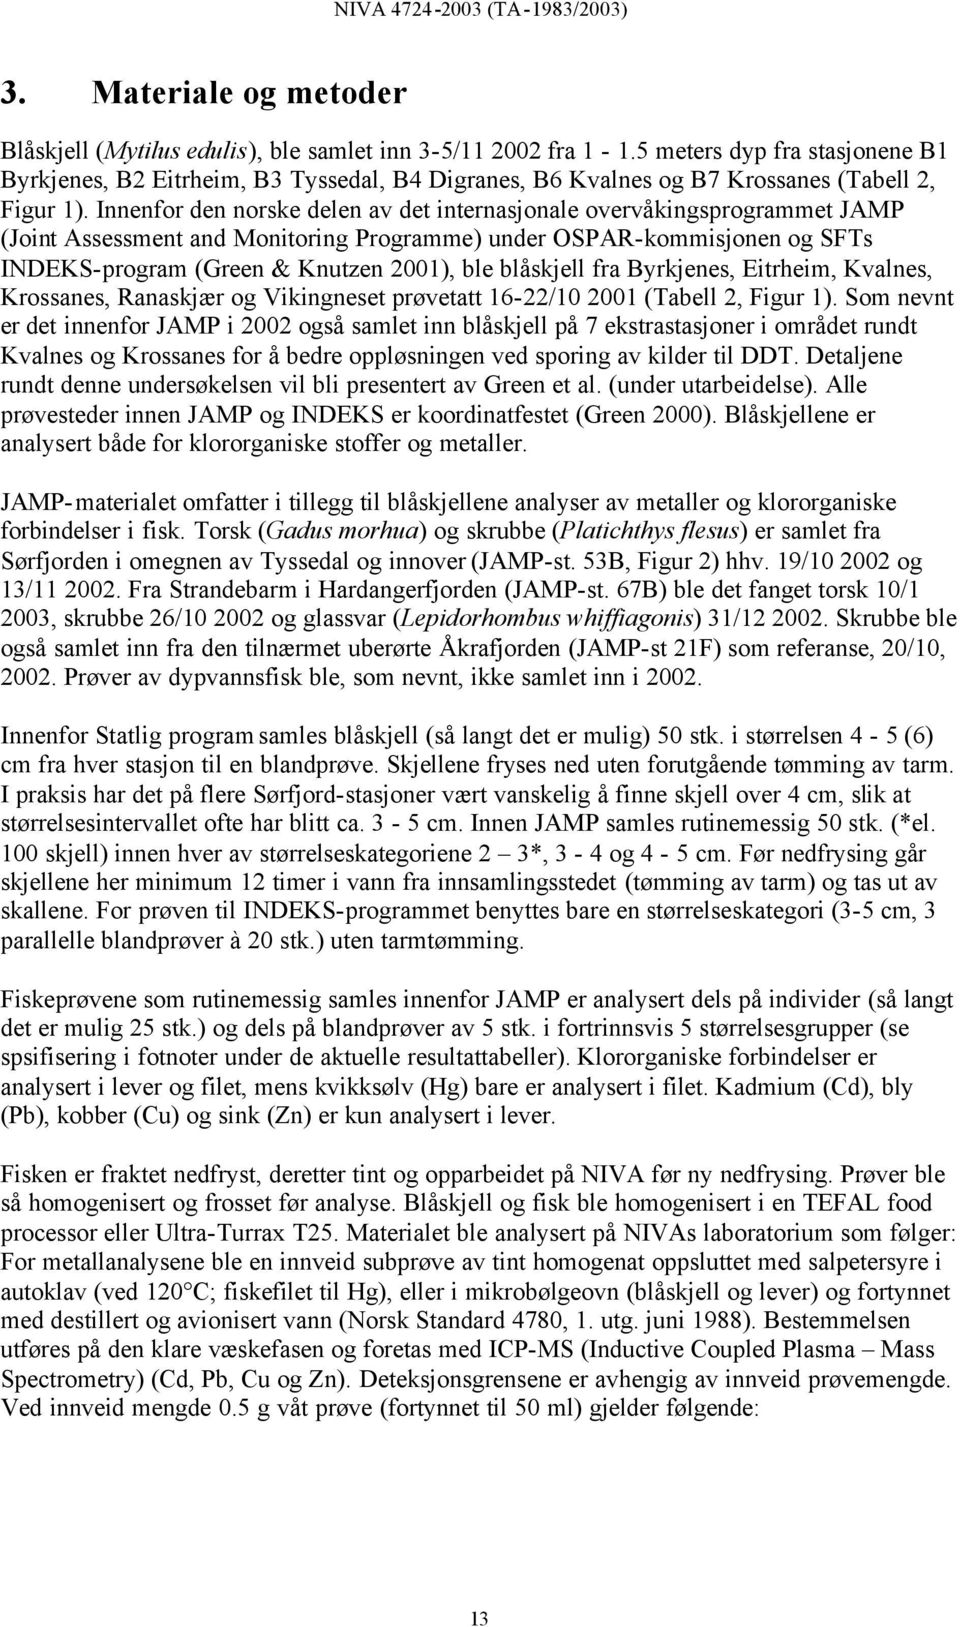 Innenfor den norske delen av det internasjonale overvåkingsprogrammet JAMP (Joint Assessment and Monitoring Programme) under OSPAR-kommisjonen og SFTs INDEKS-program (Green & Knutzen ), ble blåskjell